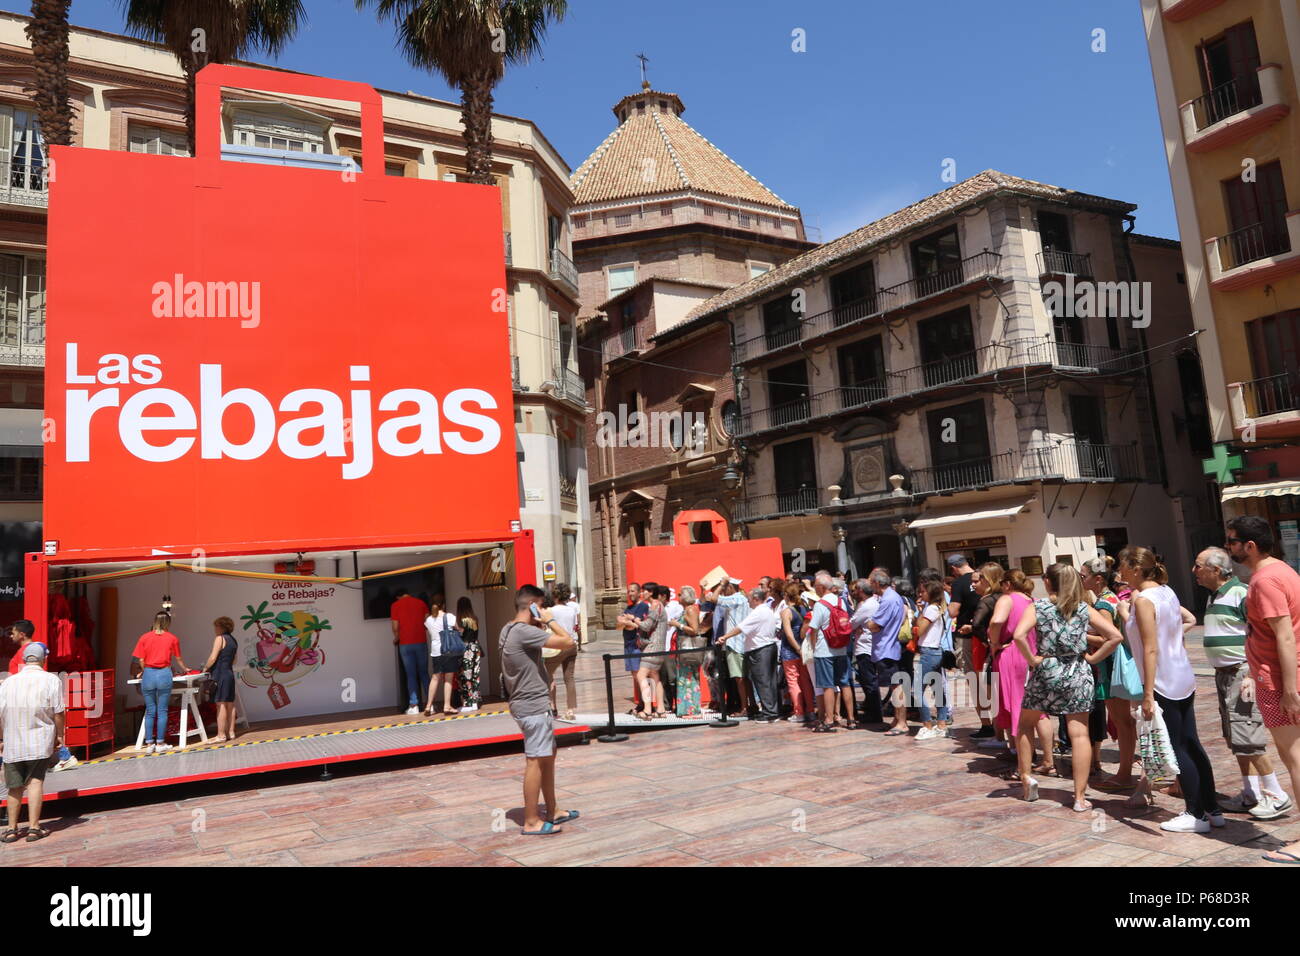 28, 2018 - Junio 28 (Málaga) El Corte Ingles presenta su campaña de ventas de verano en Málaga.La compañía ha elegido la ciudad de Málaga para presentar esta campaña de rebajas